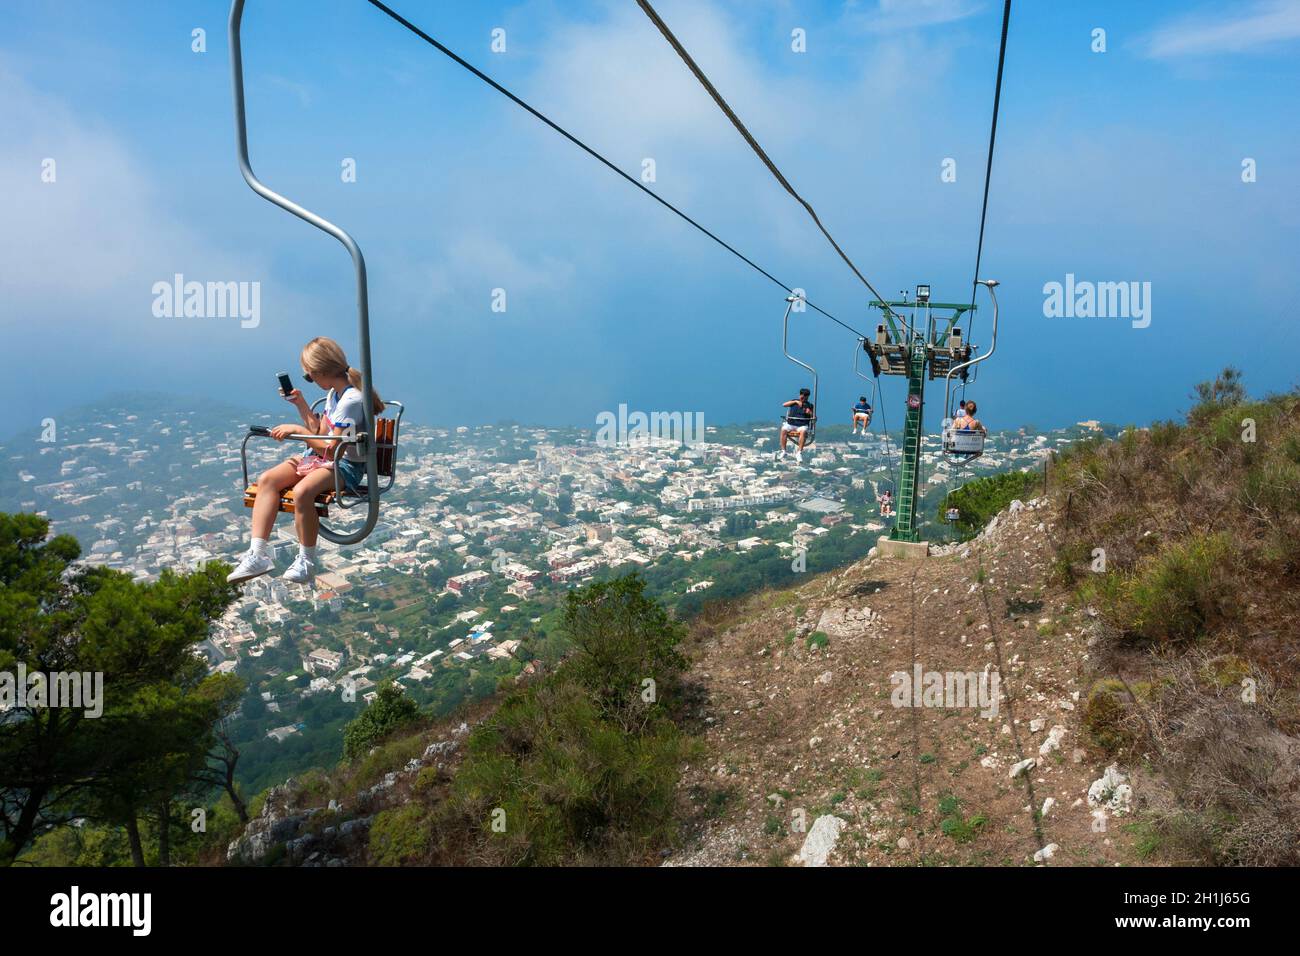 CAPRI, Italia - 29 Luglio 2018: i turisti a cavallo fino alla montagna di ascensore. Capri è una popolare destinazione turistica e un'isola d'Italia. Foto Stock